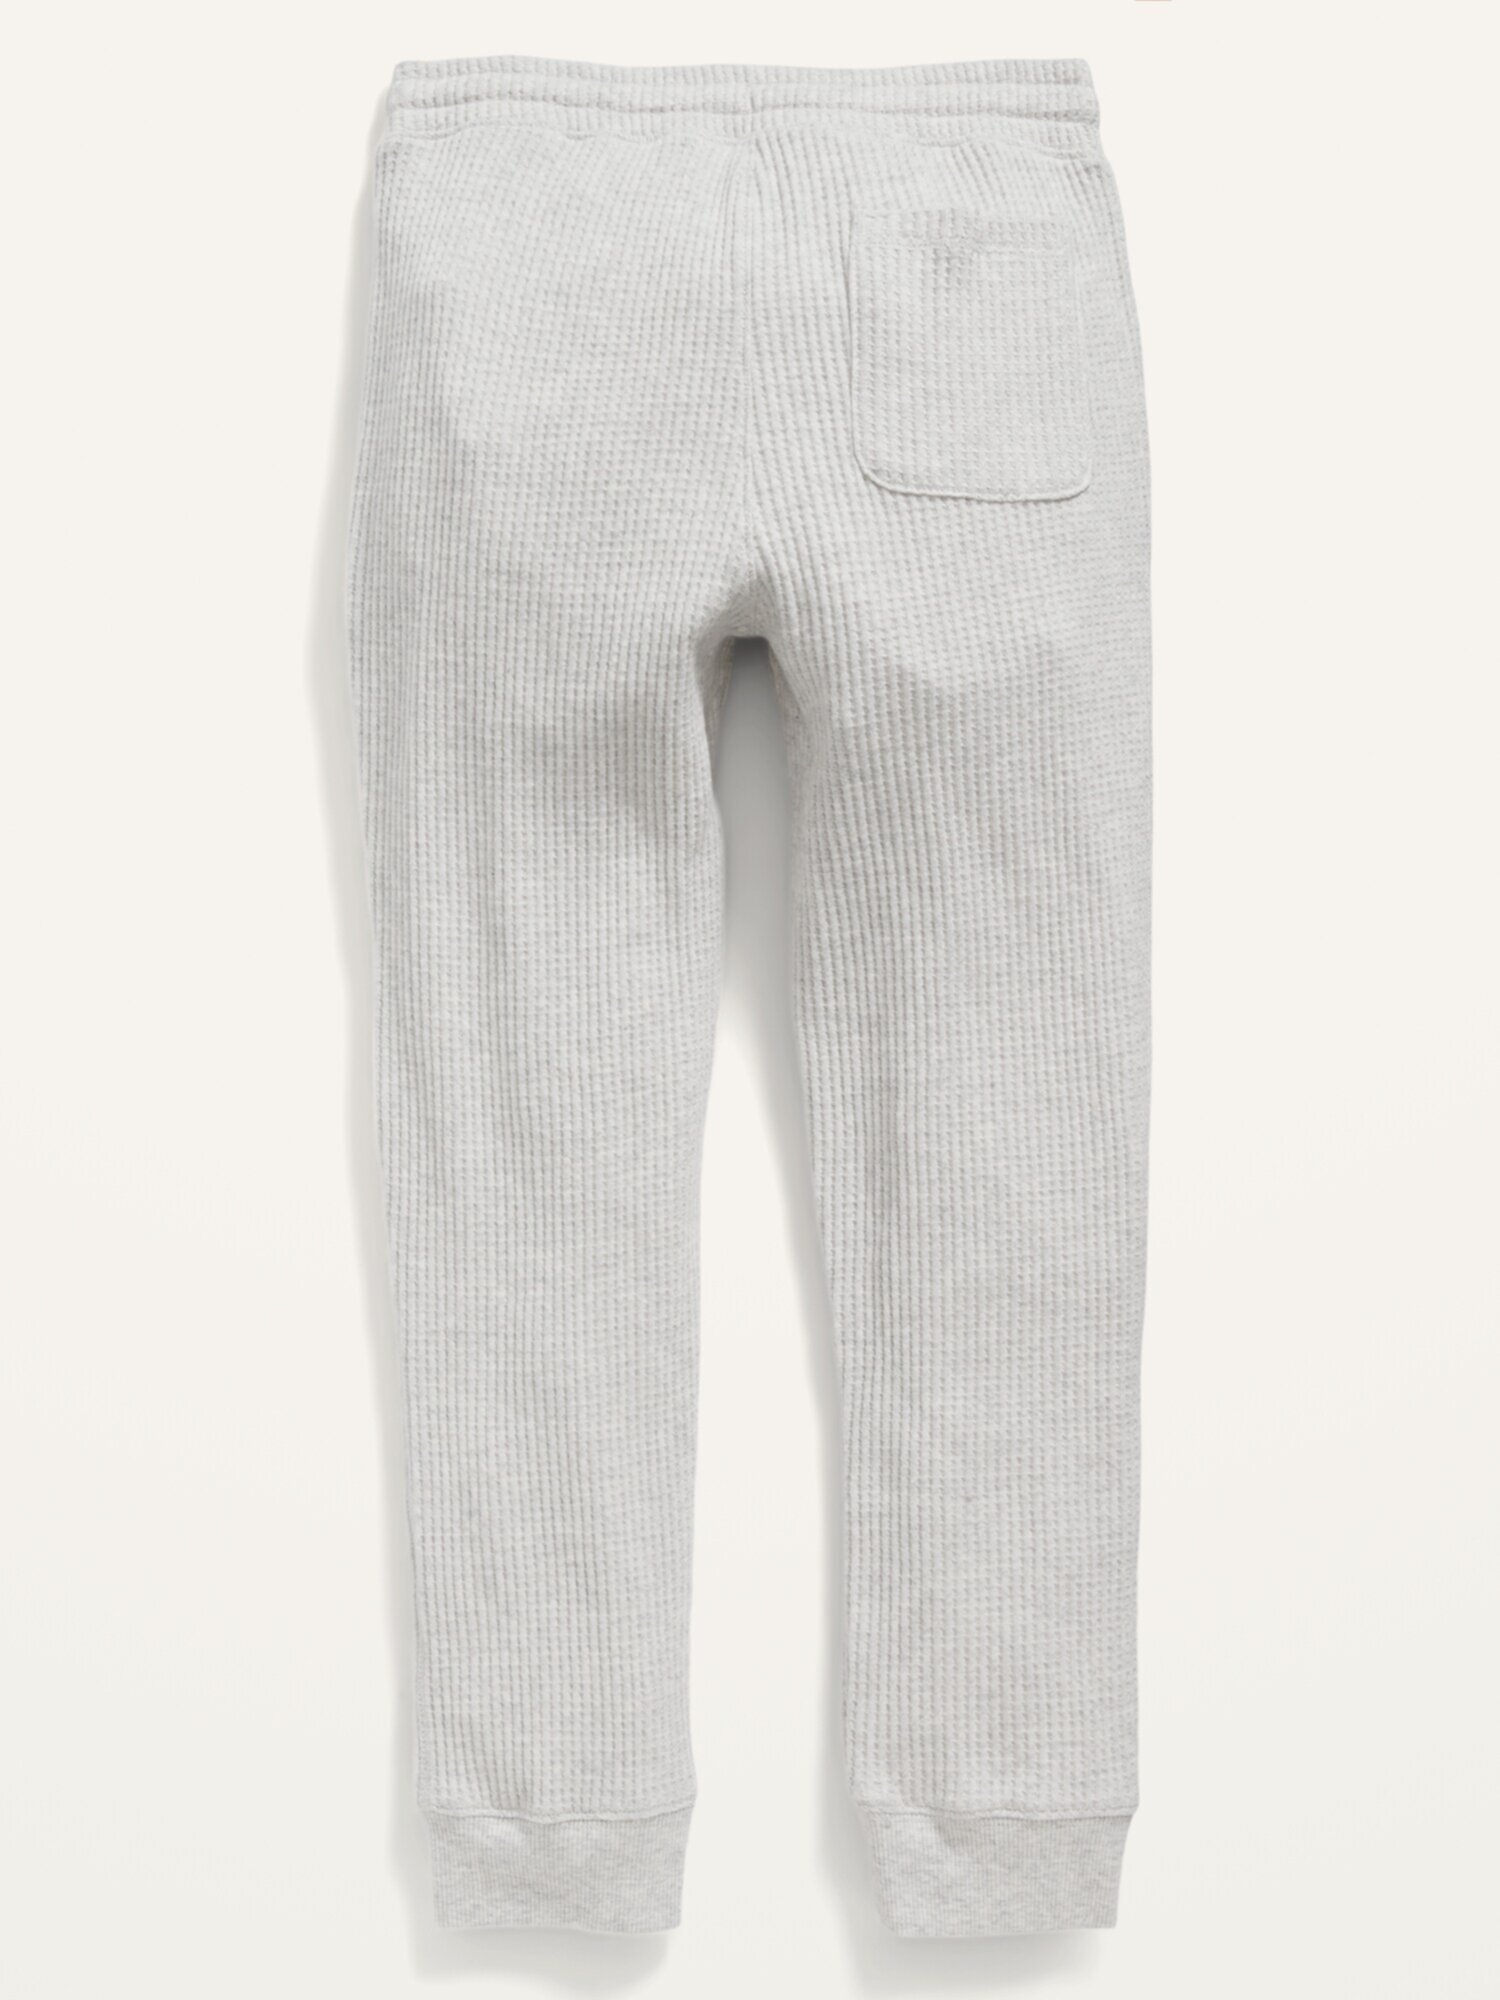 Текстурированные спортивные штаны-джоггеры для мальчиков Old Navy